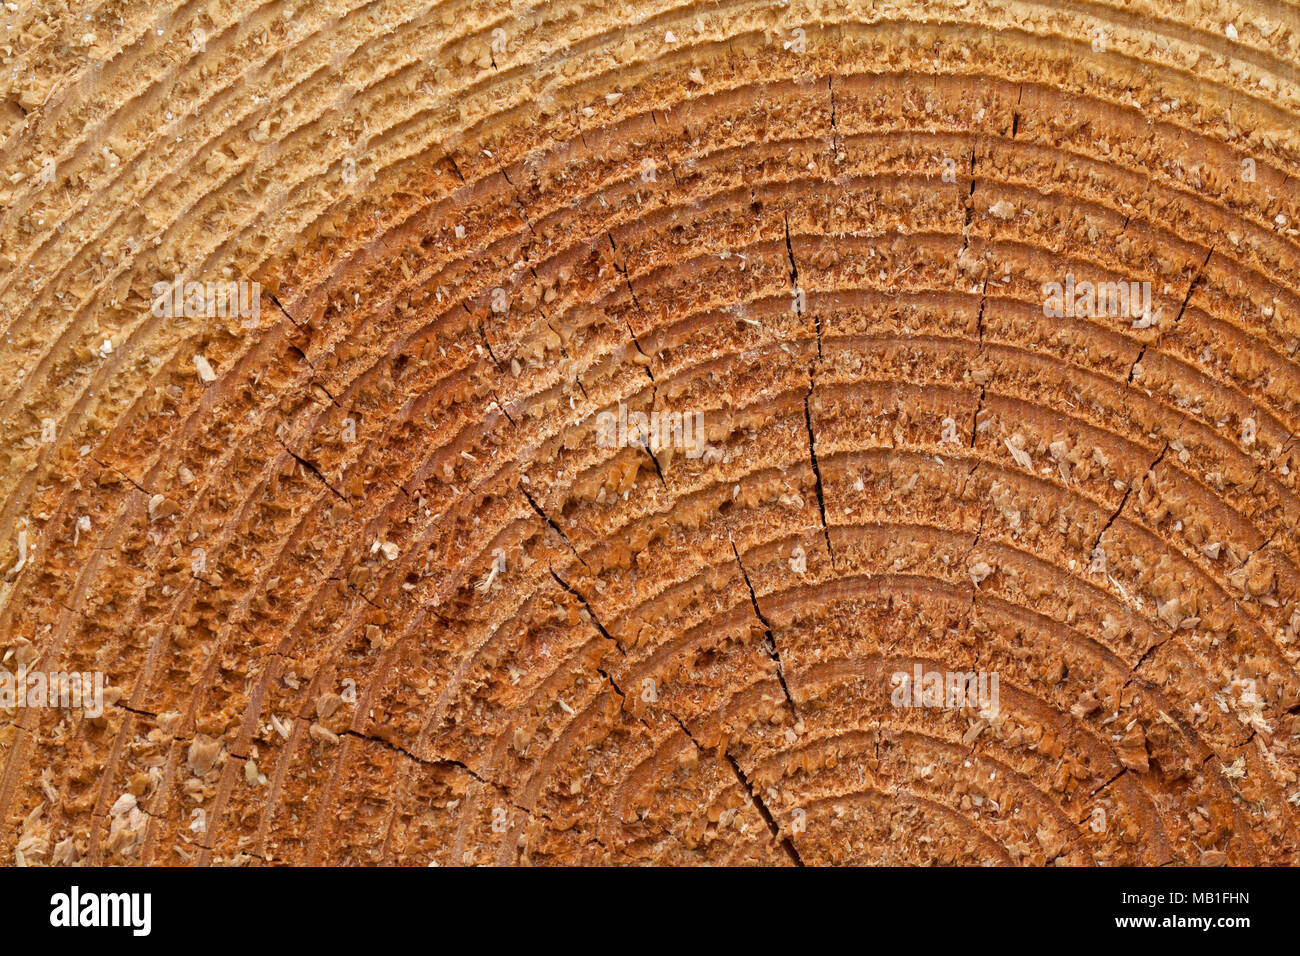 Cross-section / coupe / section en coupe d'arbres abattus l'épinette de Norvège (Picea abies) montrant les anneaux de croissance annuels / année sonne Banque D'Images